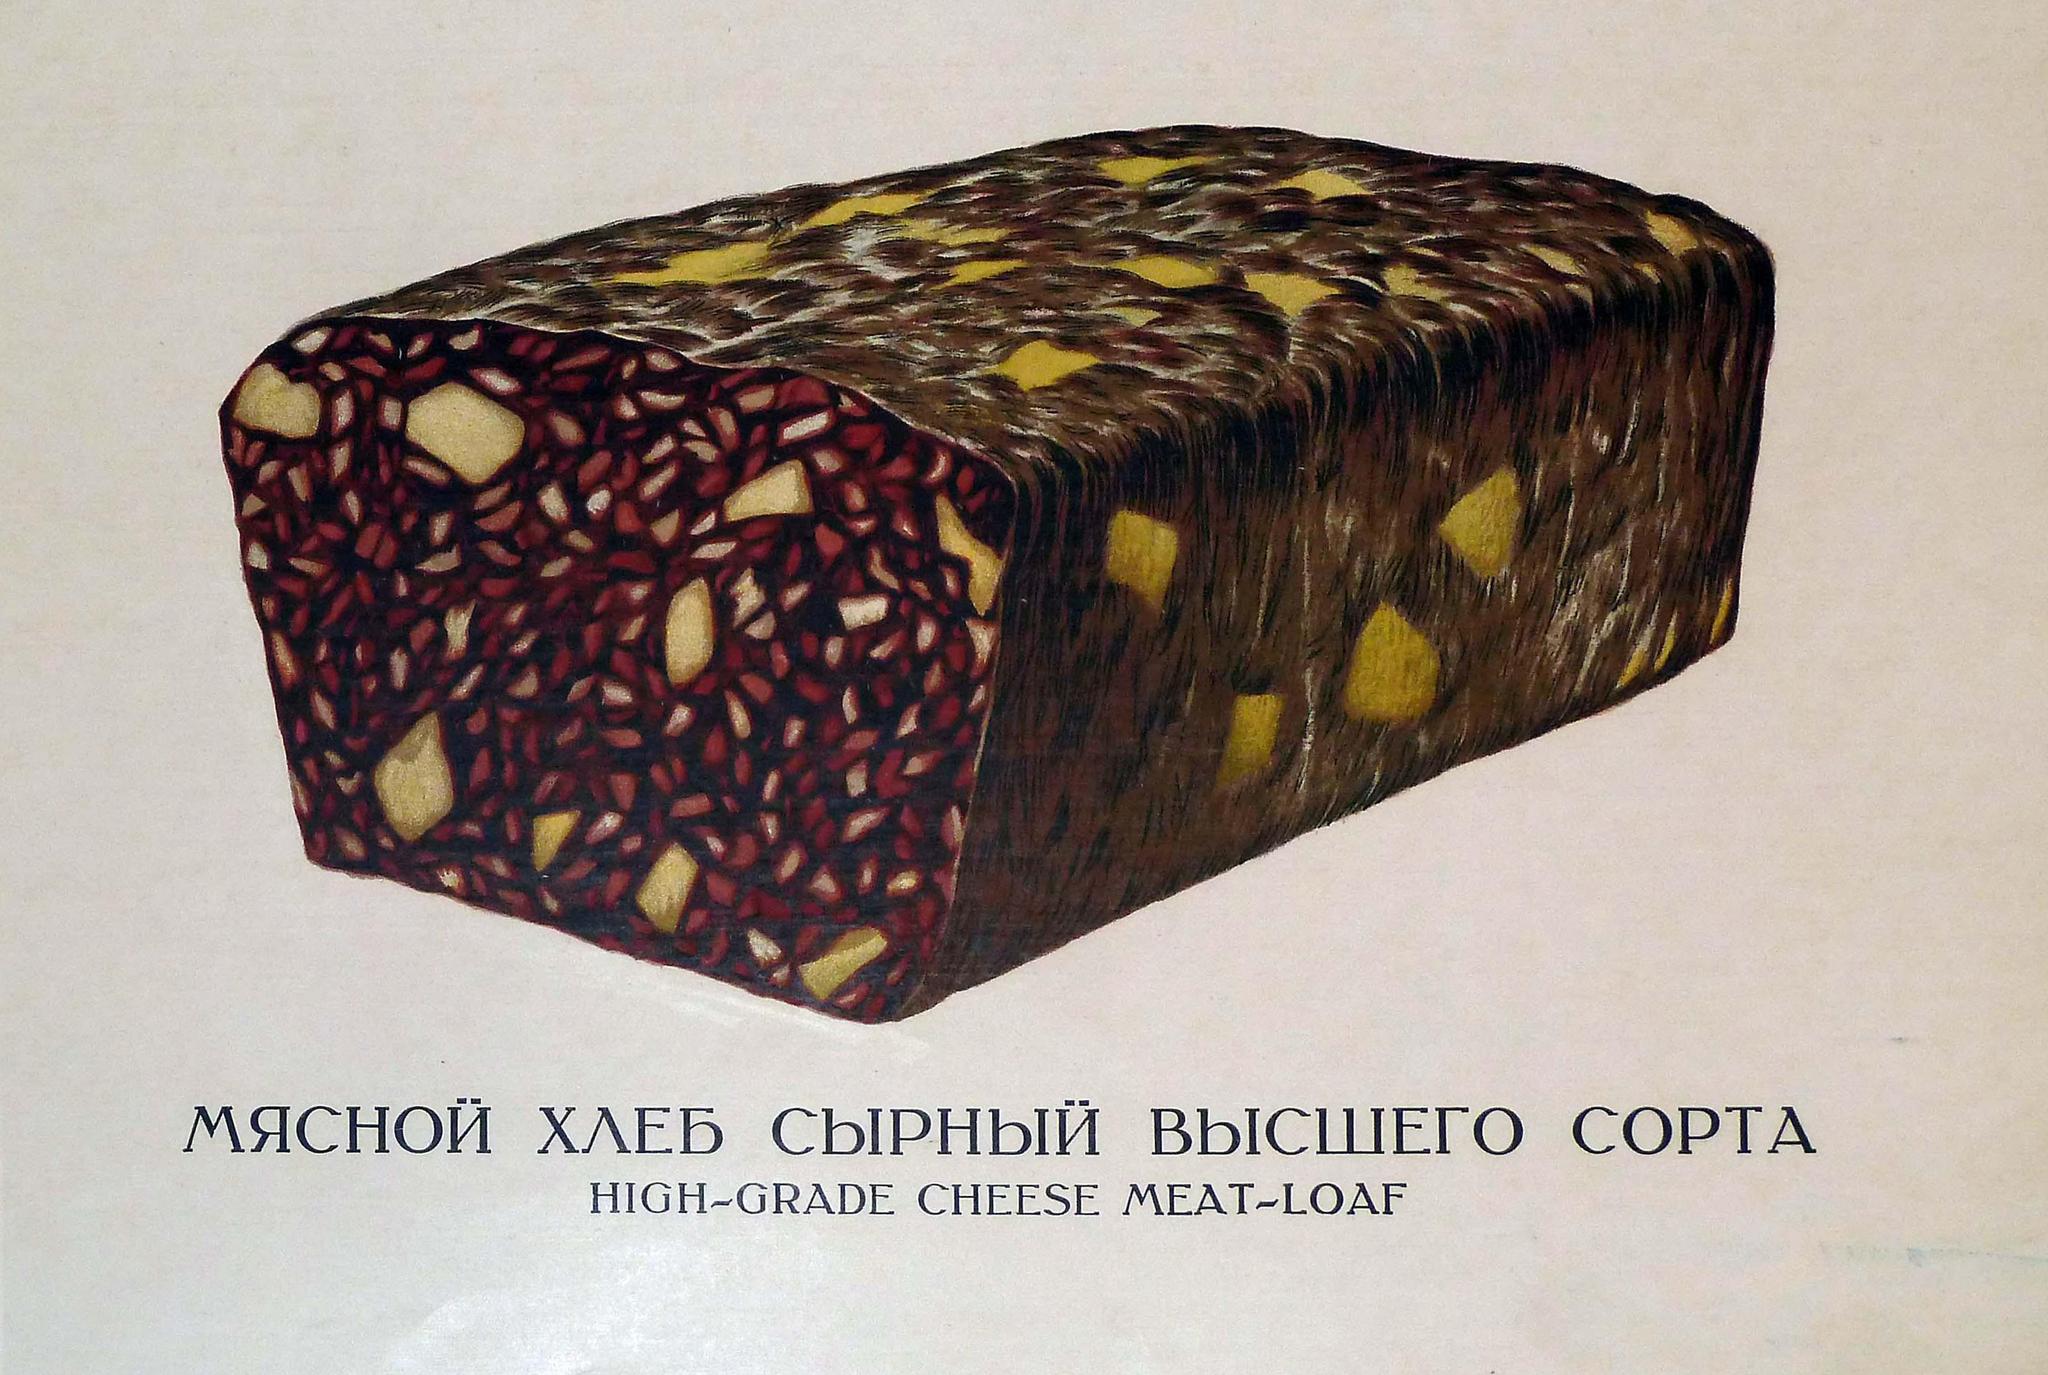 Мясной хлеб сырный высшего сорта